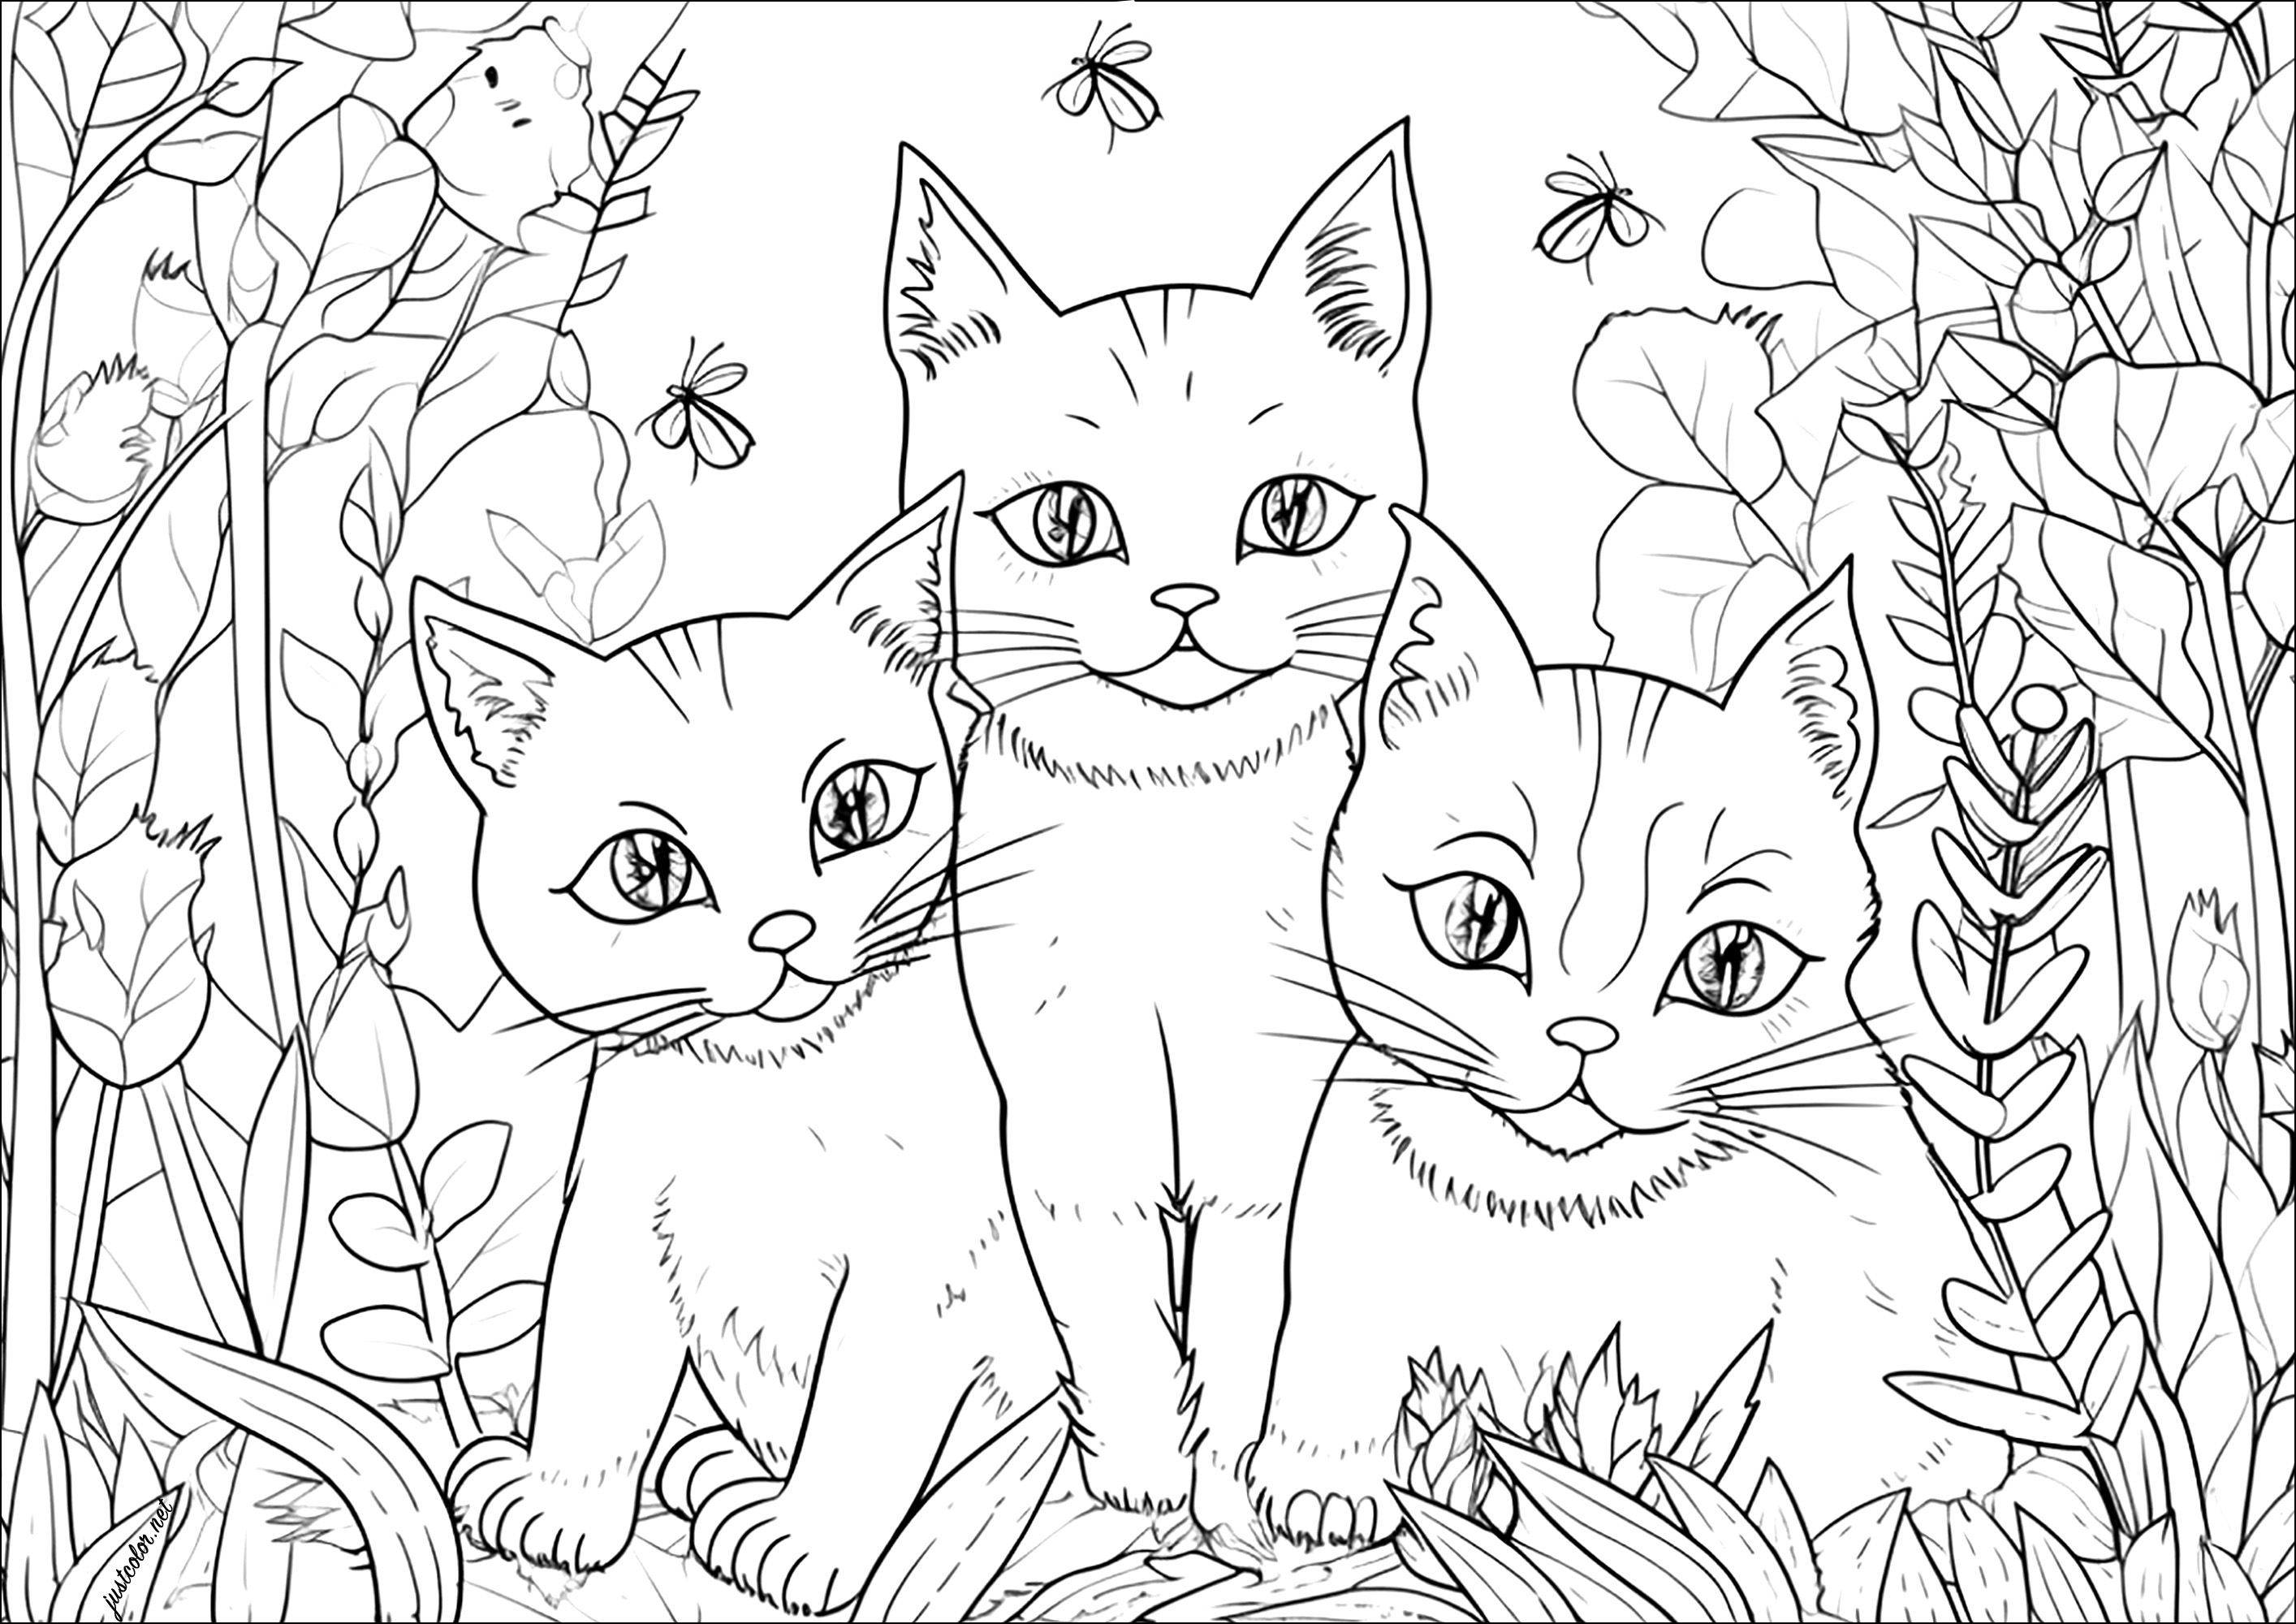 Três gatos bonitos num jardim. Num belo cenário de jardim, alguns insectos rodeiam estes três belos gatos, desenhados num estilo muito realista.